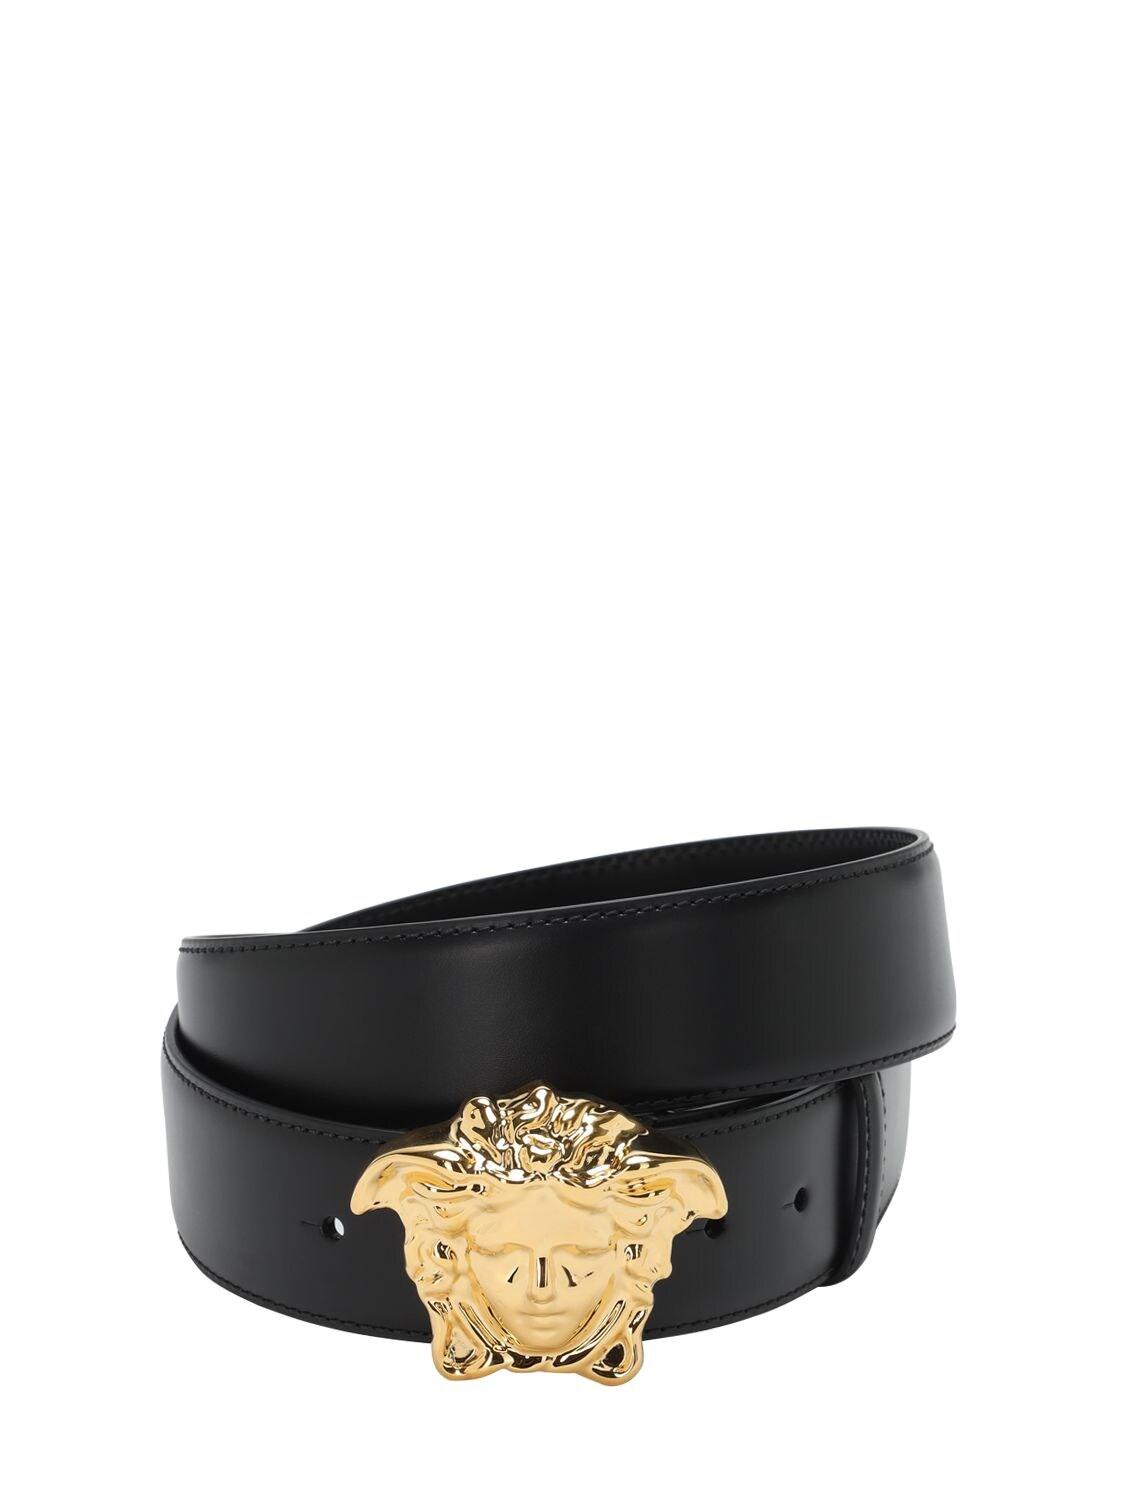 Versace 40mm Leather Belt W/ Medusa Buckle in Black/Gold (Black) for ...